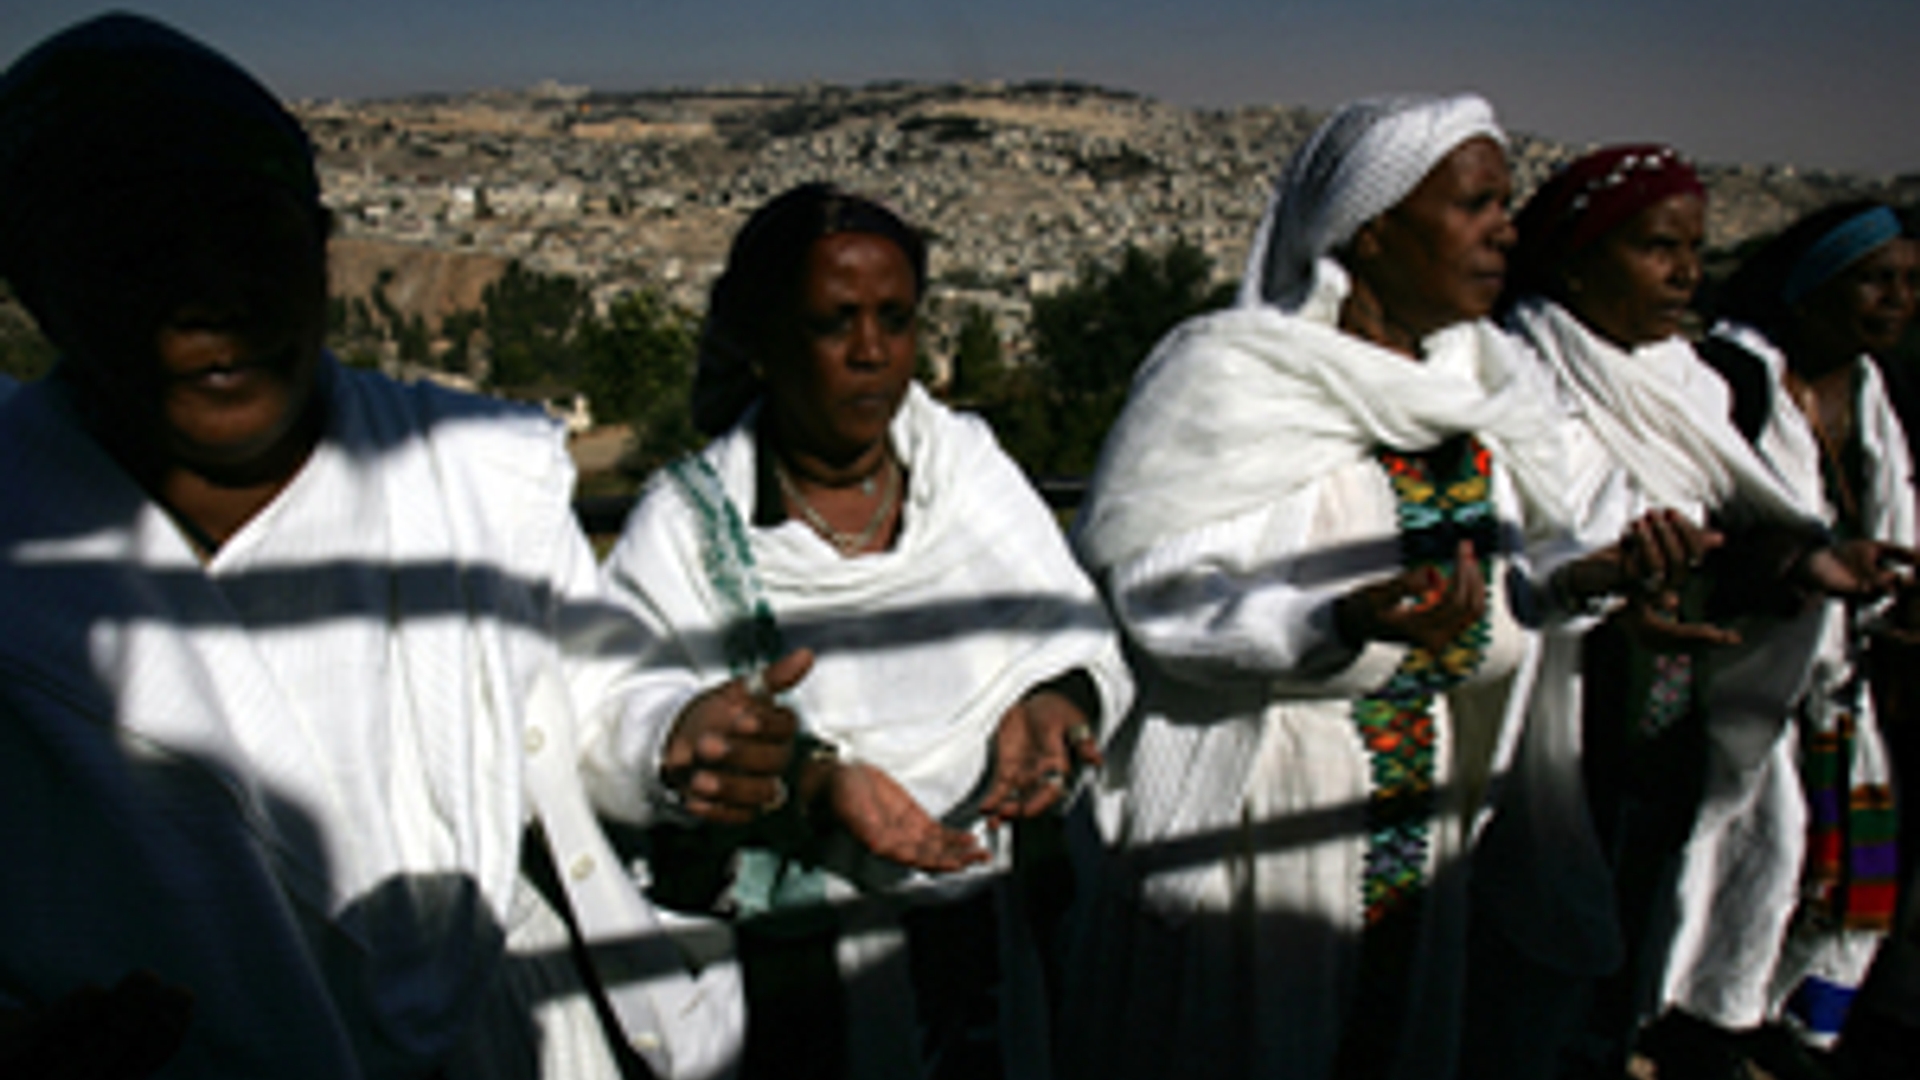 ANP-Ethiopia300.jpg